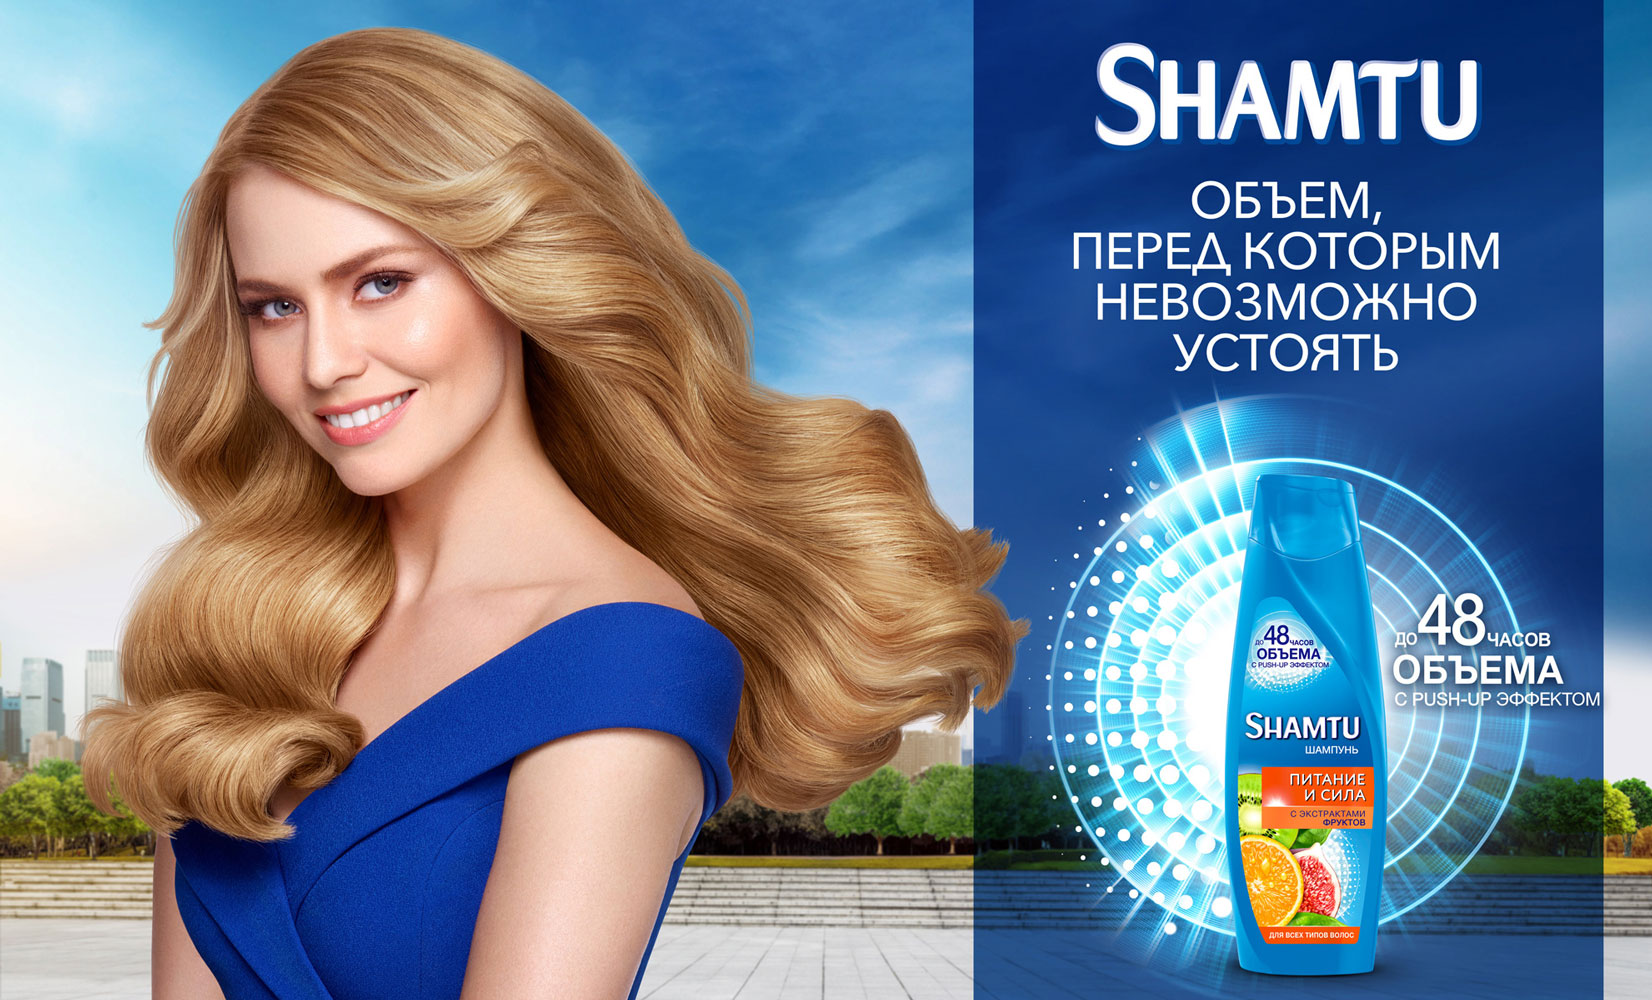 Рекламирует шампунь. Реклама шампуня. Реклама шампуня Shamtu. Реклама шампуня для волос. Девушка для рекламы шампуня.